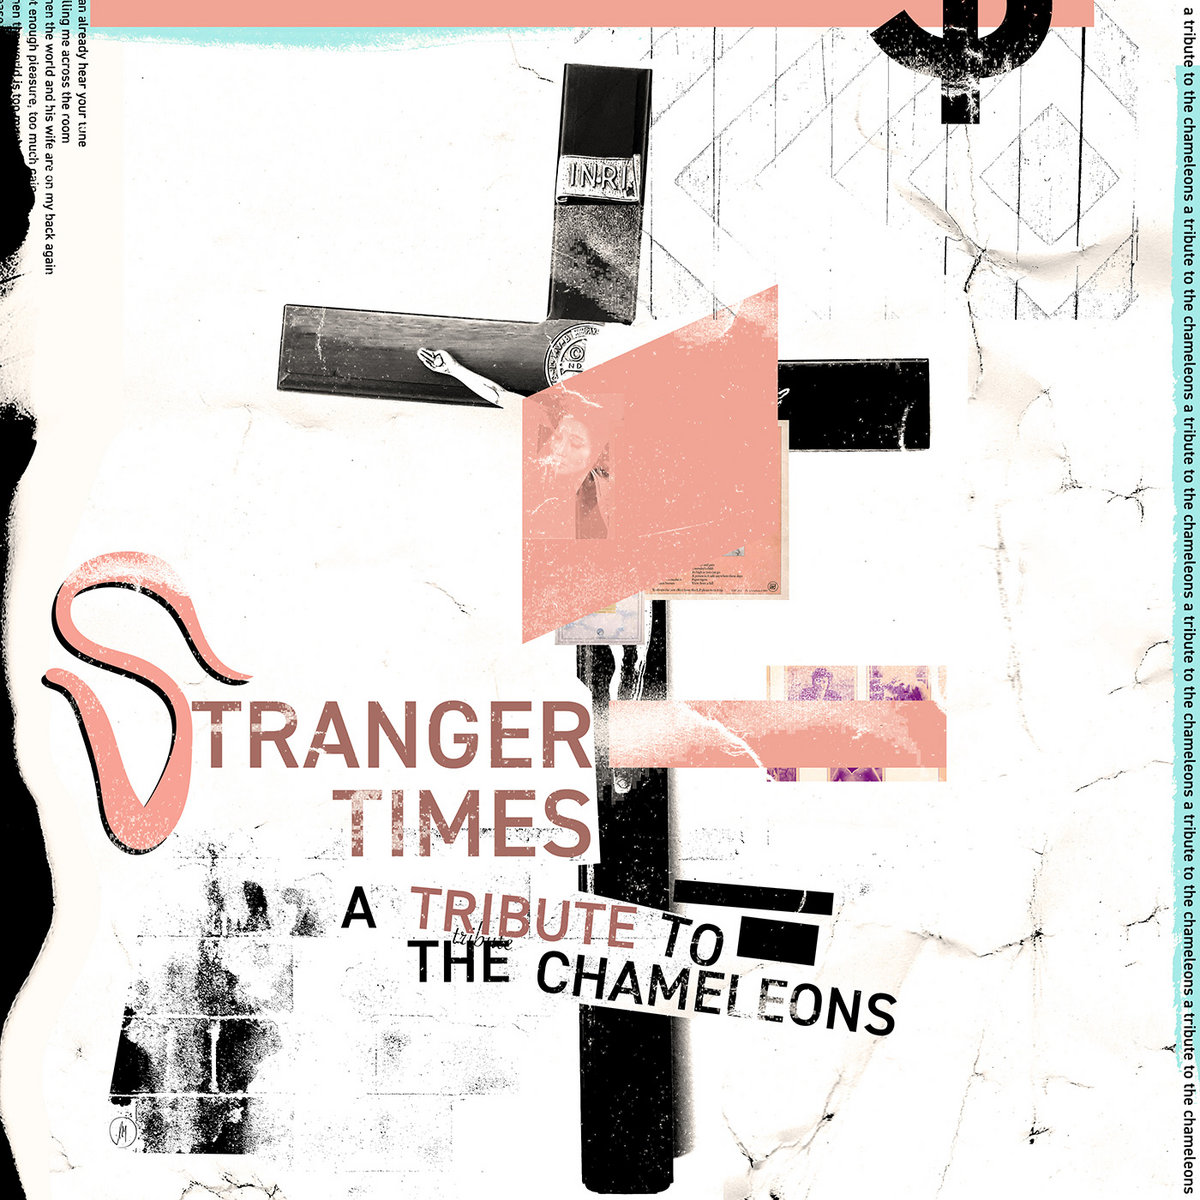 News – Stranger Times A Tribute to The Chameleons